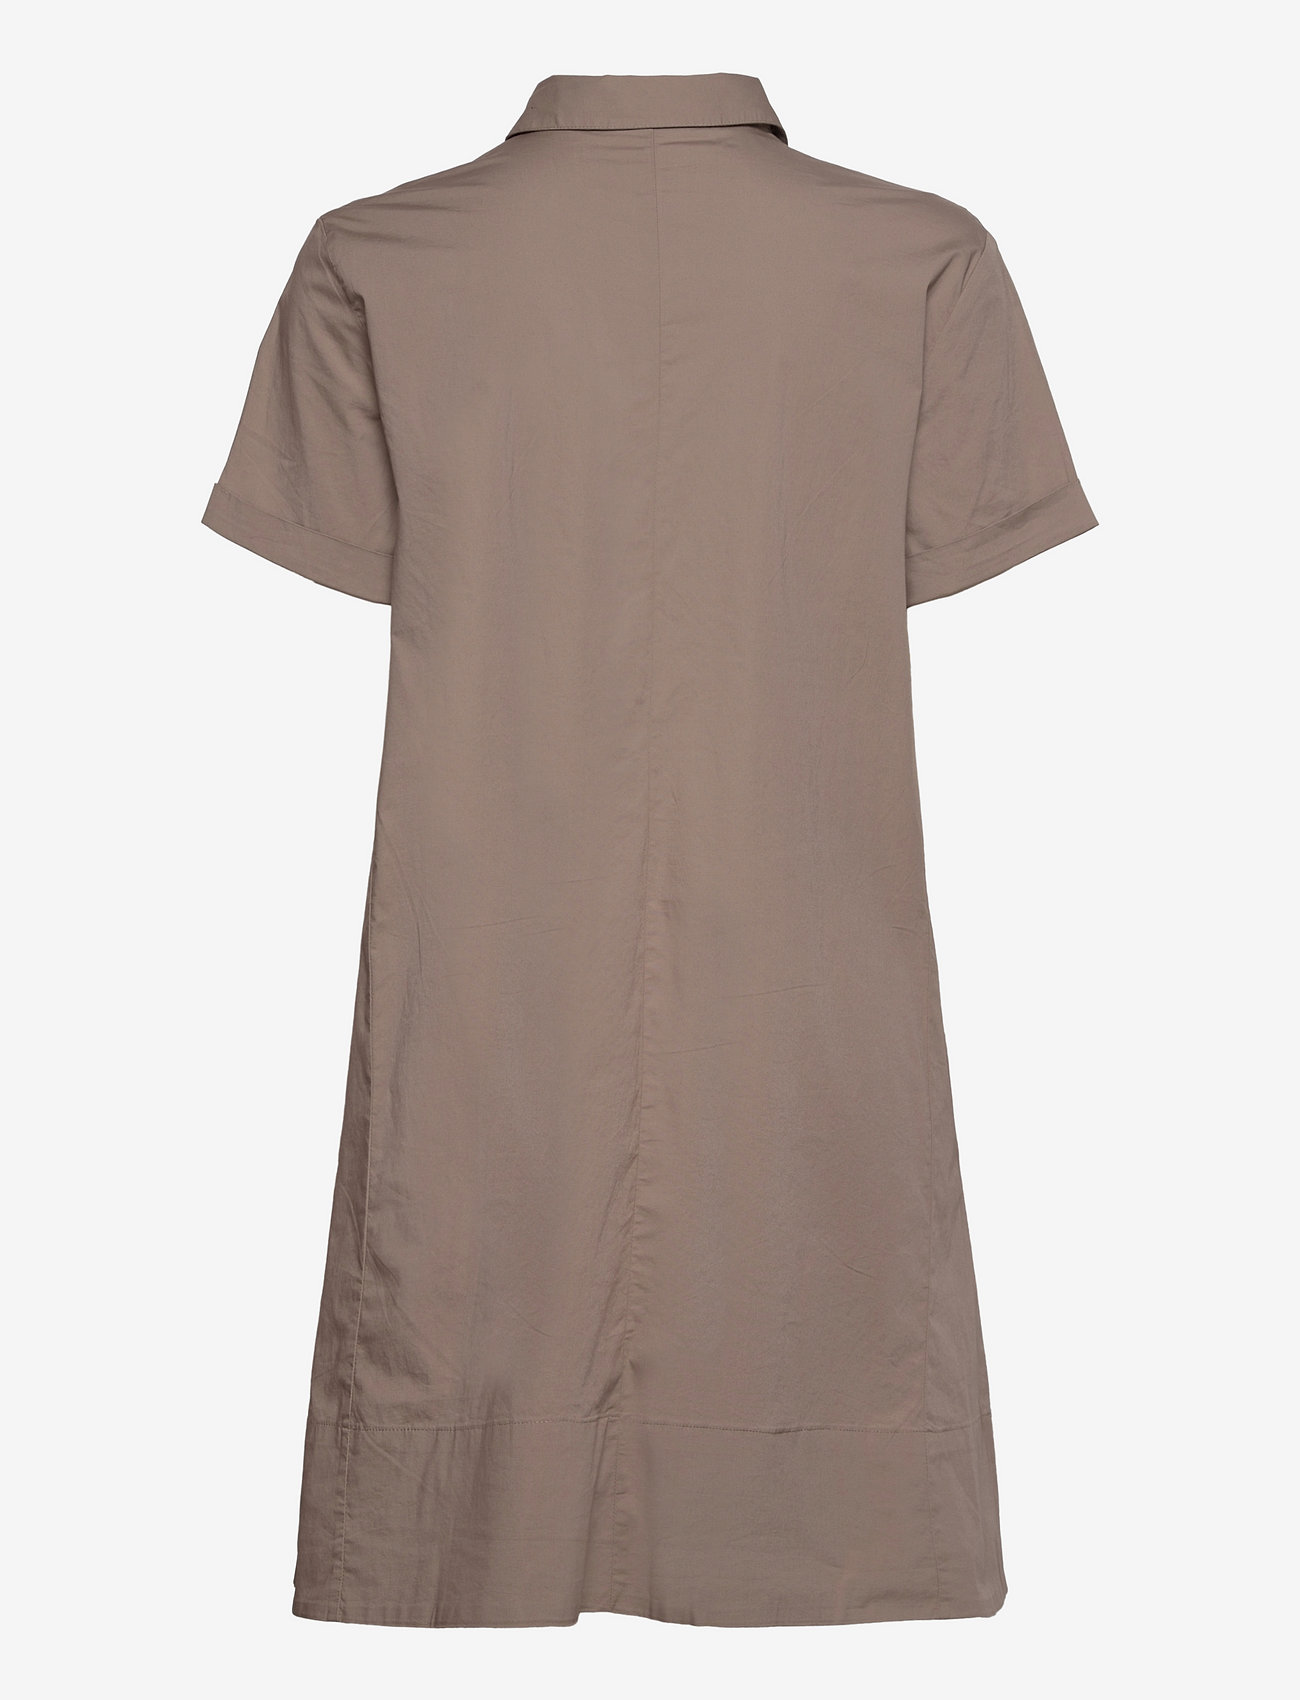 Esprit Casual - Dresses light woven - skjortekjoler - taupe - 1